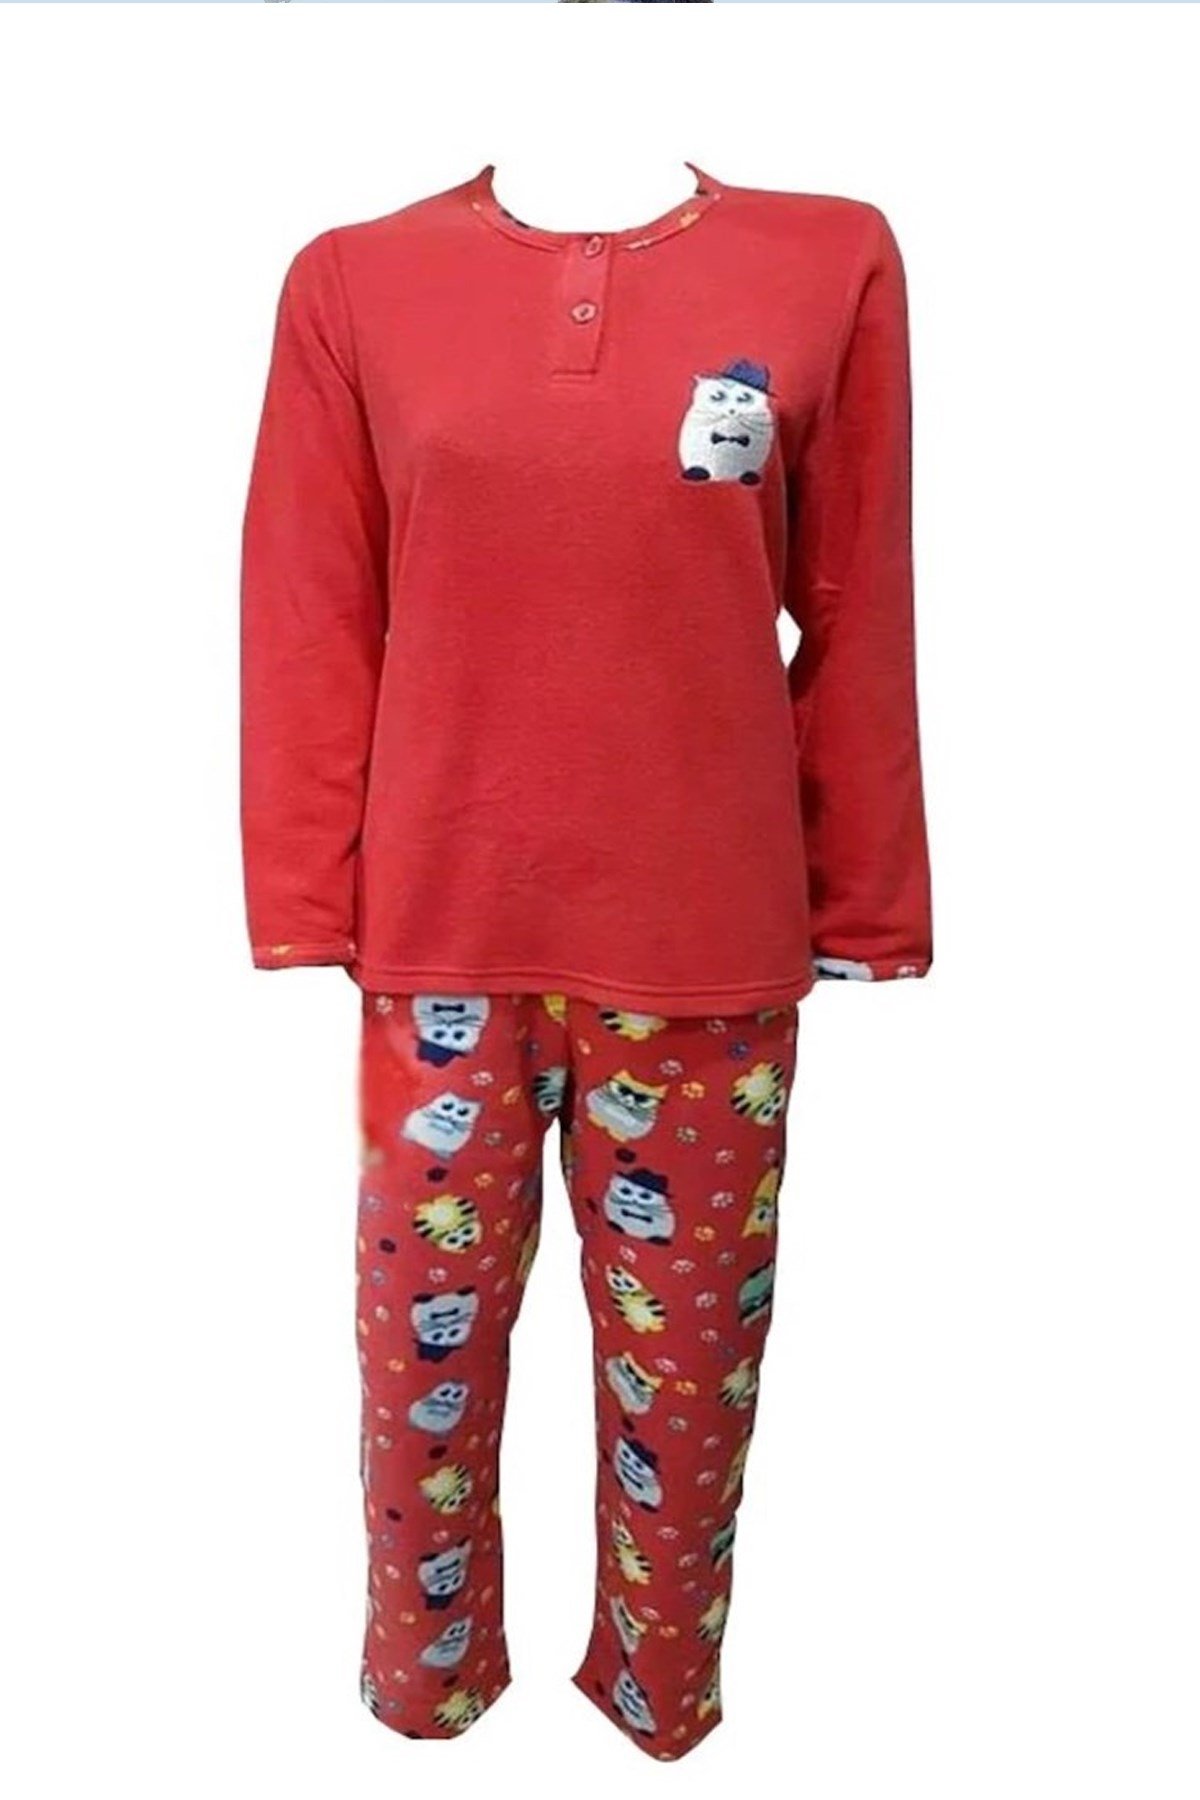 Mng Bayan Polar Pijama Takımı 101 Yeni Sezon! Moda! Ürünler Rakipsiz  Fiyatlar İç Giyim, Ev Tekstili, Kozmetik, Çeyiz ve Daha Fazlası |  yoncatoptan.com